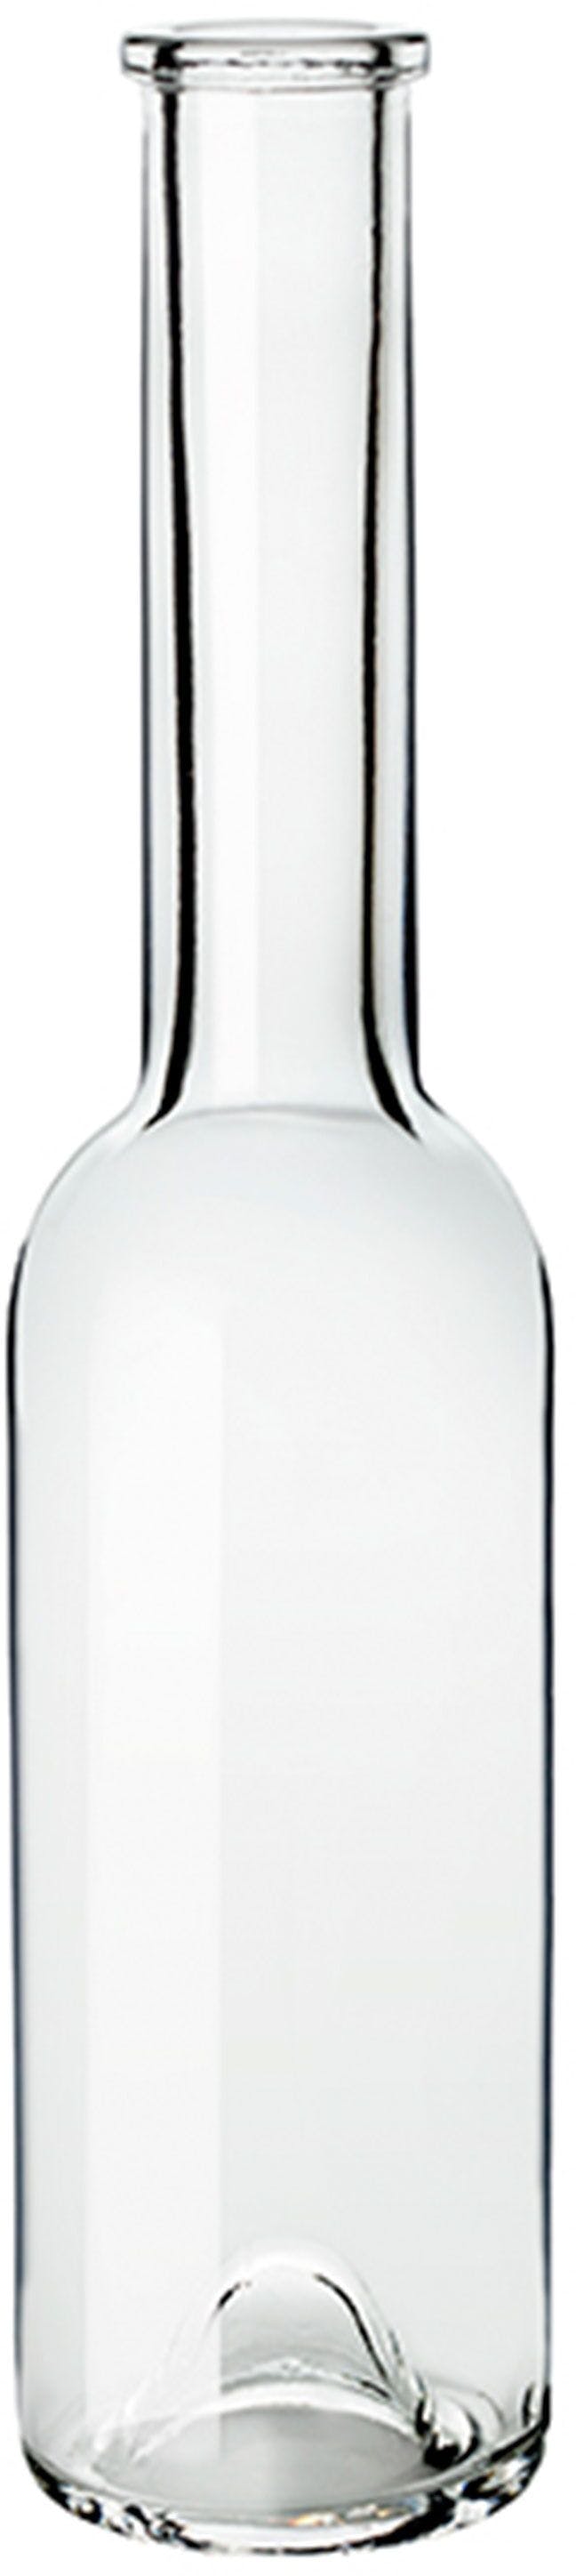 Bottiglia SINFONIA 200 OPERA F 5